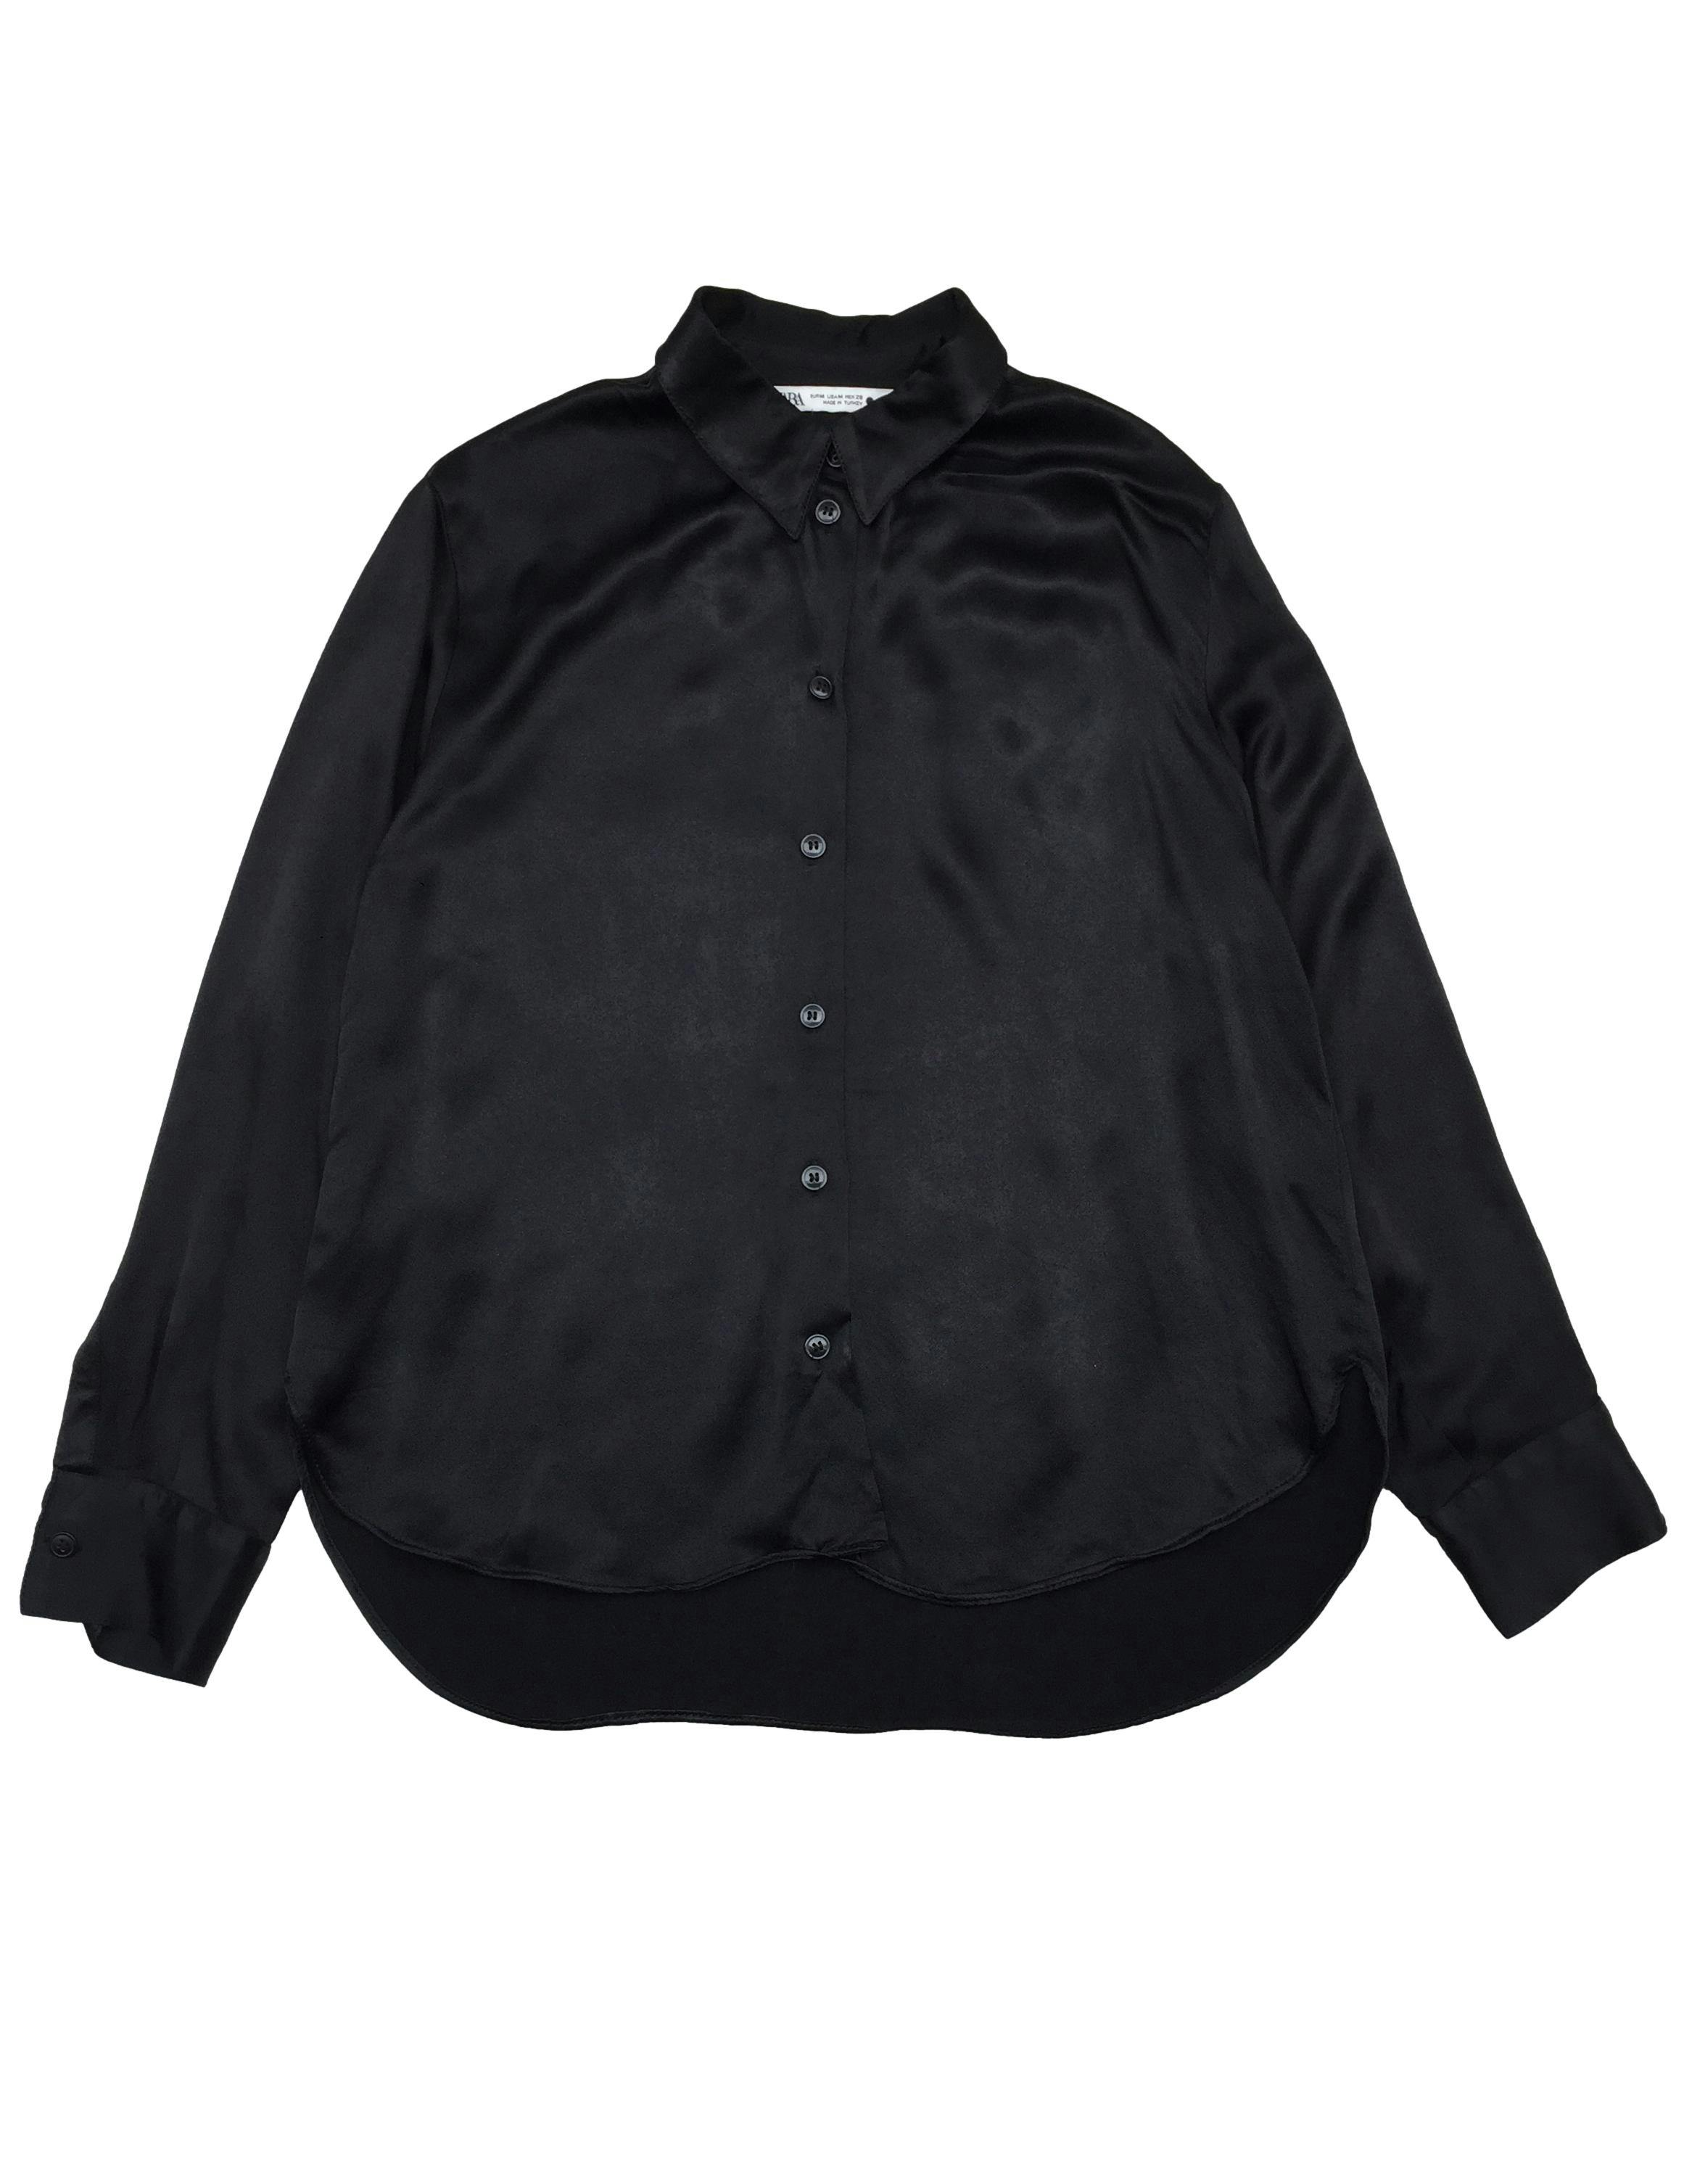 Blusa Zara negra satinada con botones delanteros. Busto 104cm Largo 60cm